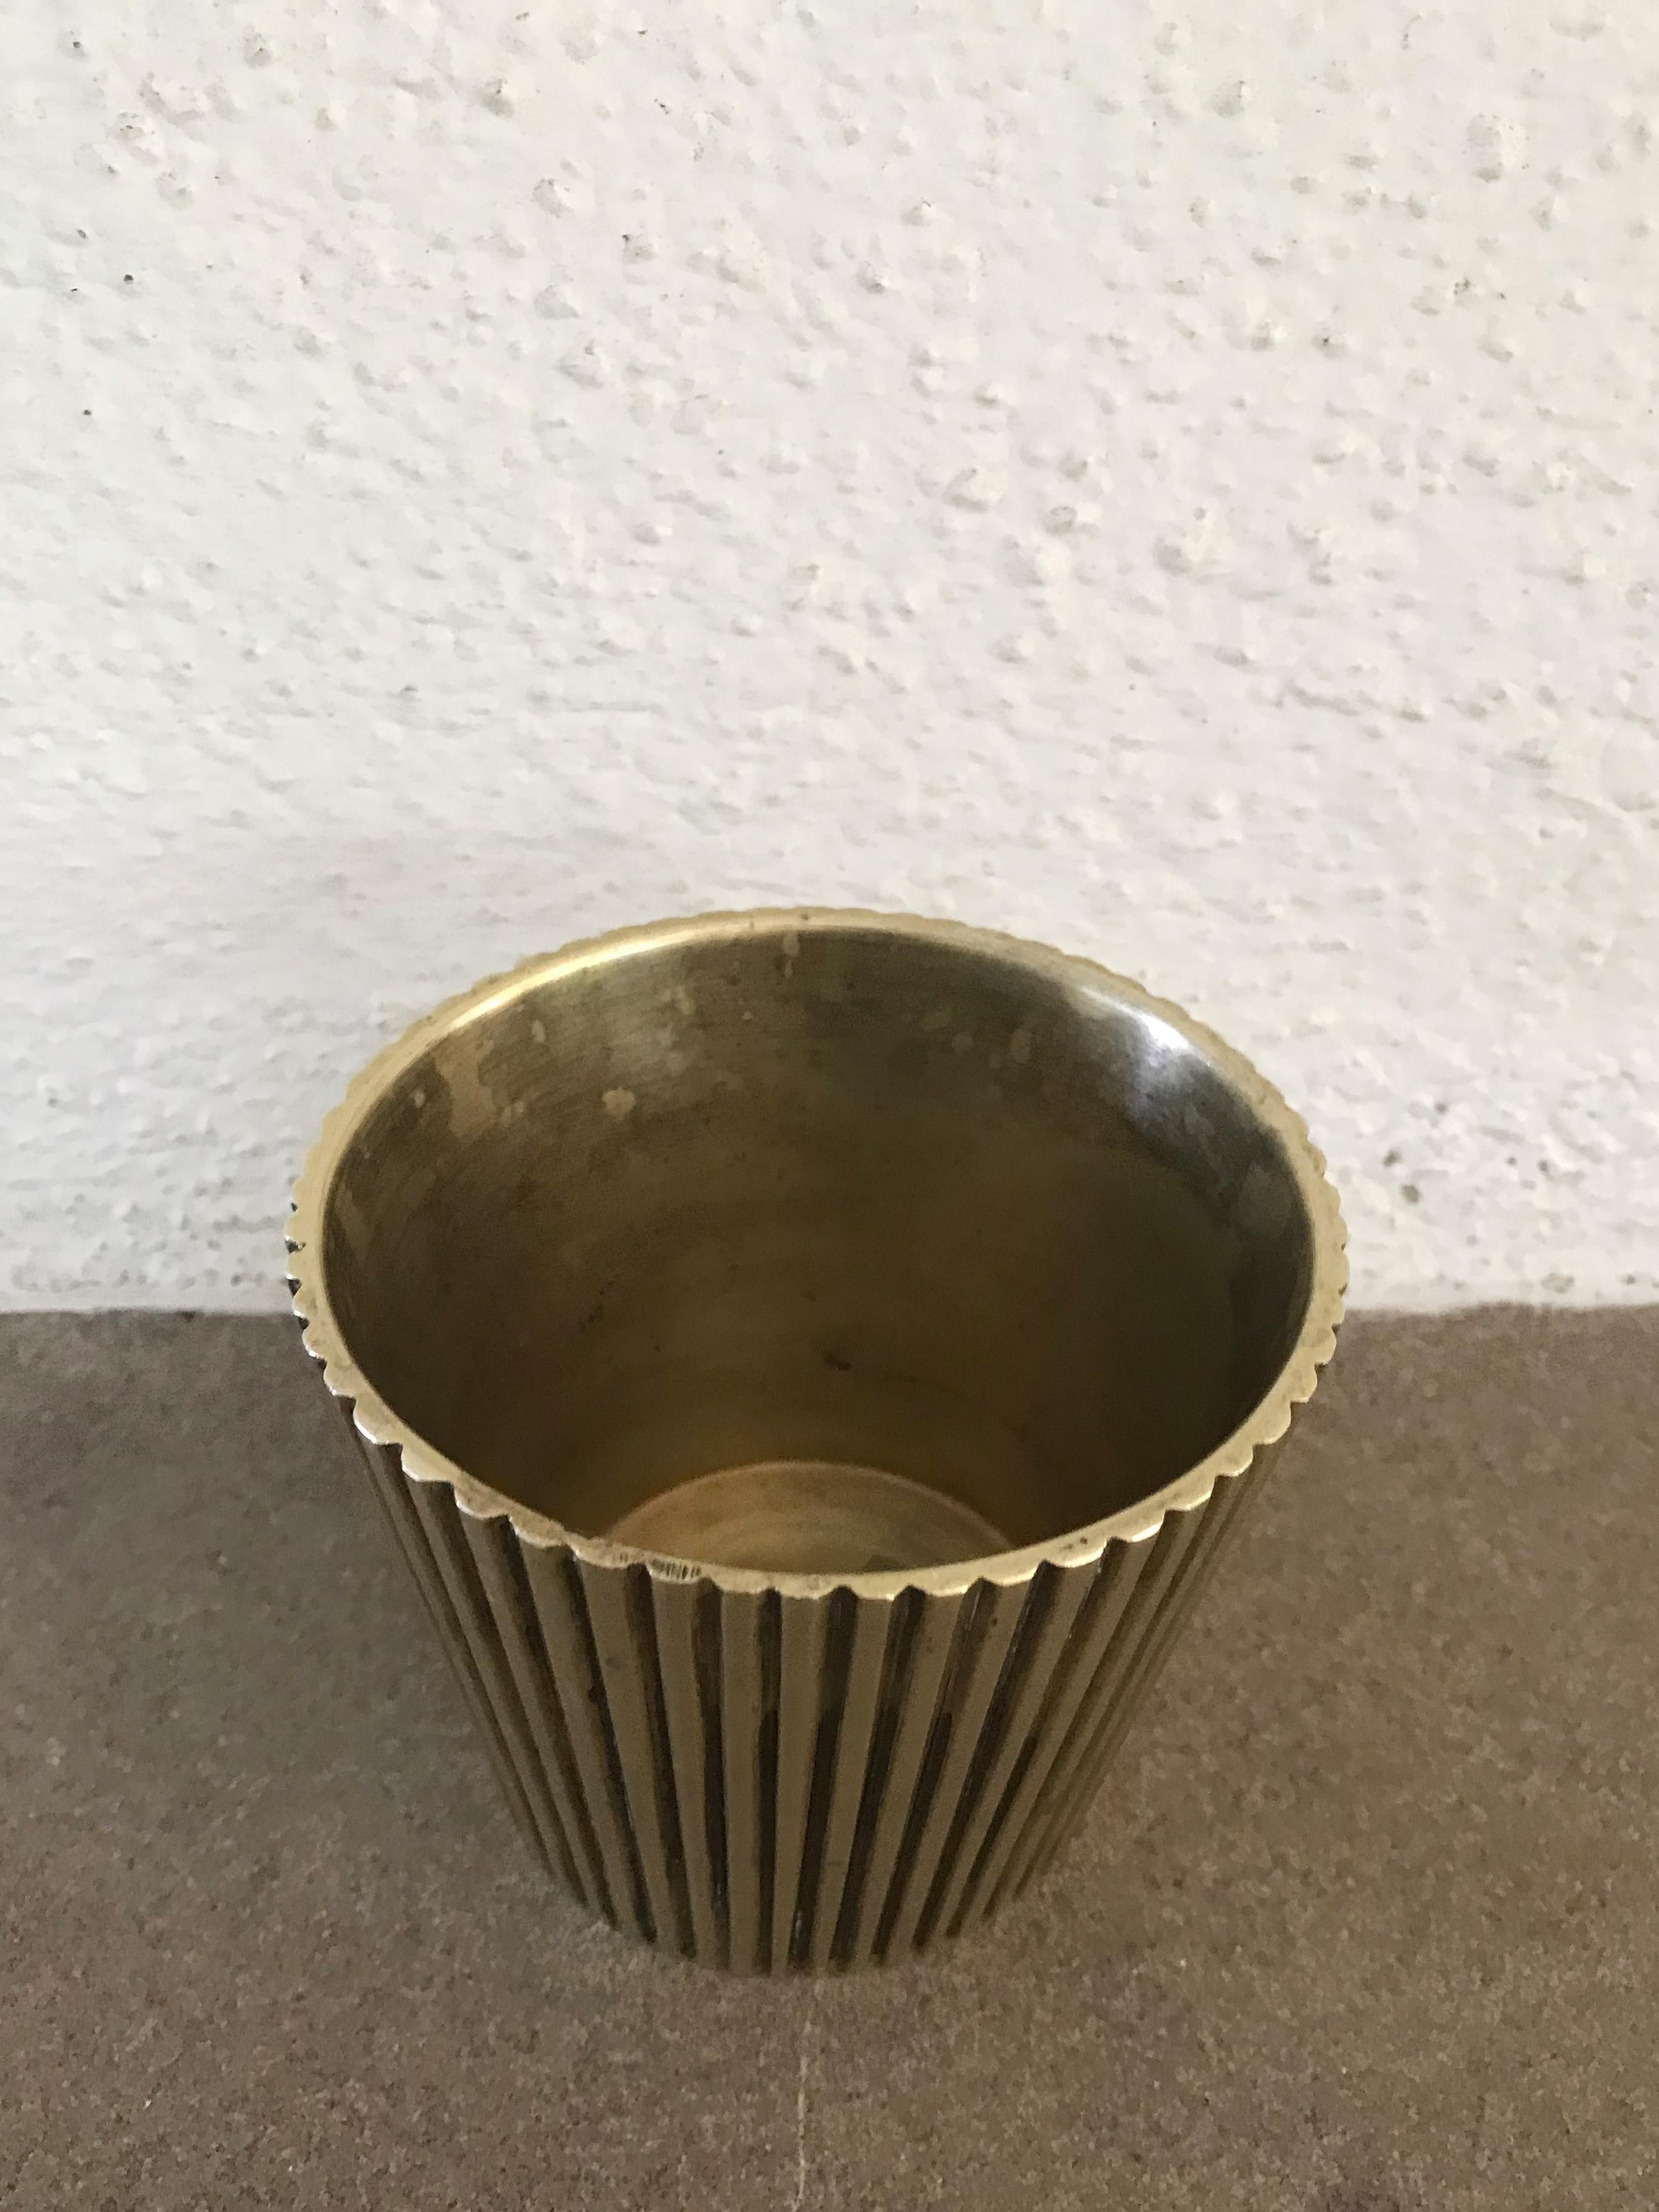 Skandinavische Vase im modernen Design der Jahrhundertmitte aus massivem Messing, hergestellt in Dänemark, ca. 1950er Jahre.
Bitte beachten Sie, dass es sich bei dem Artikel um ein Original aus der damaligen Zeit handelt, das normale Alters- und